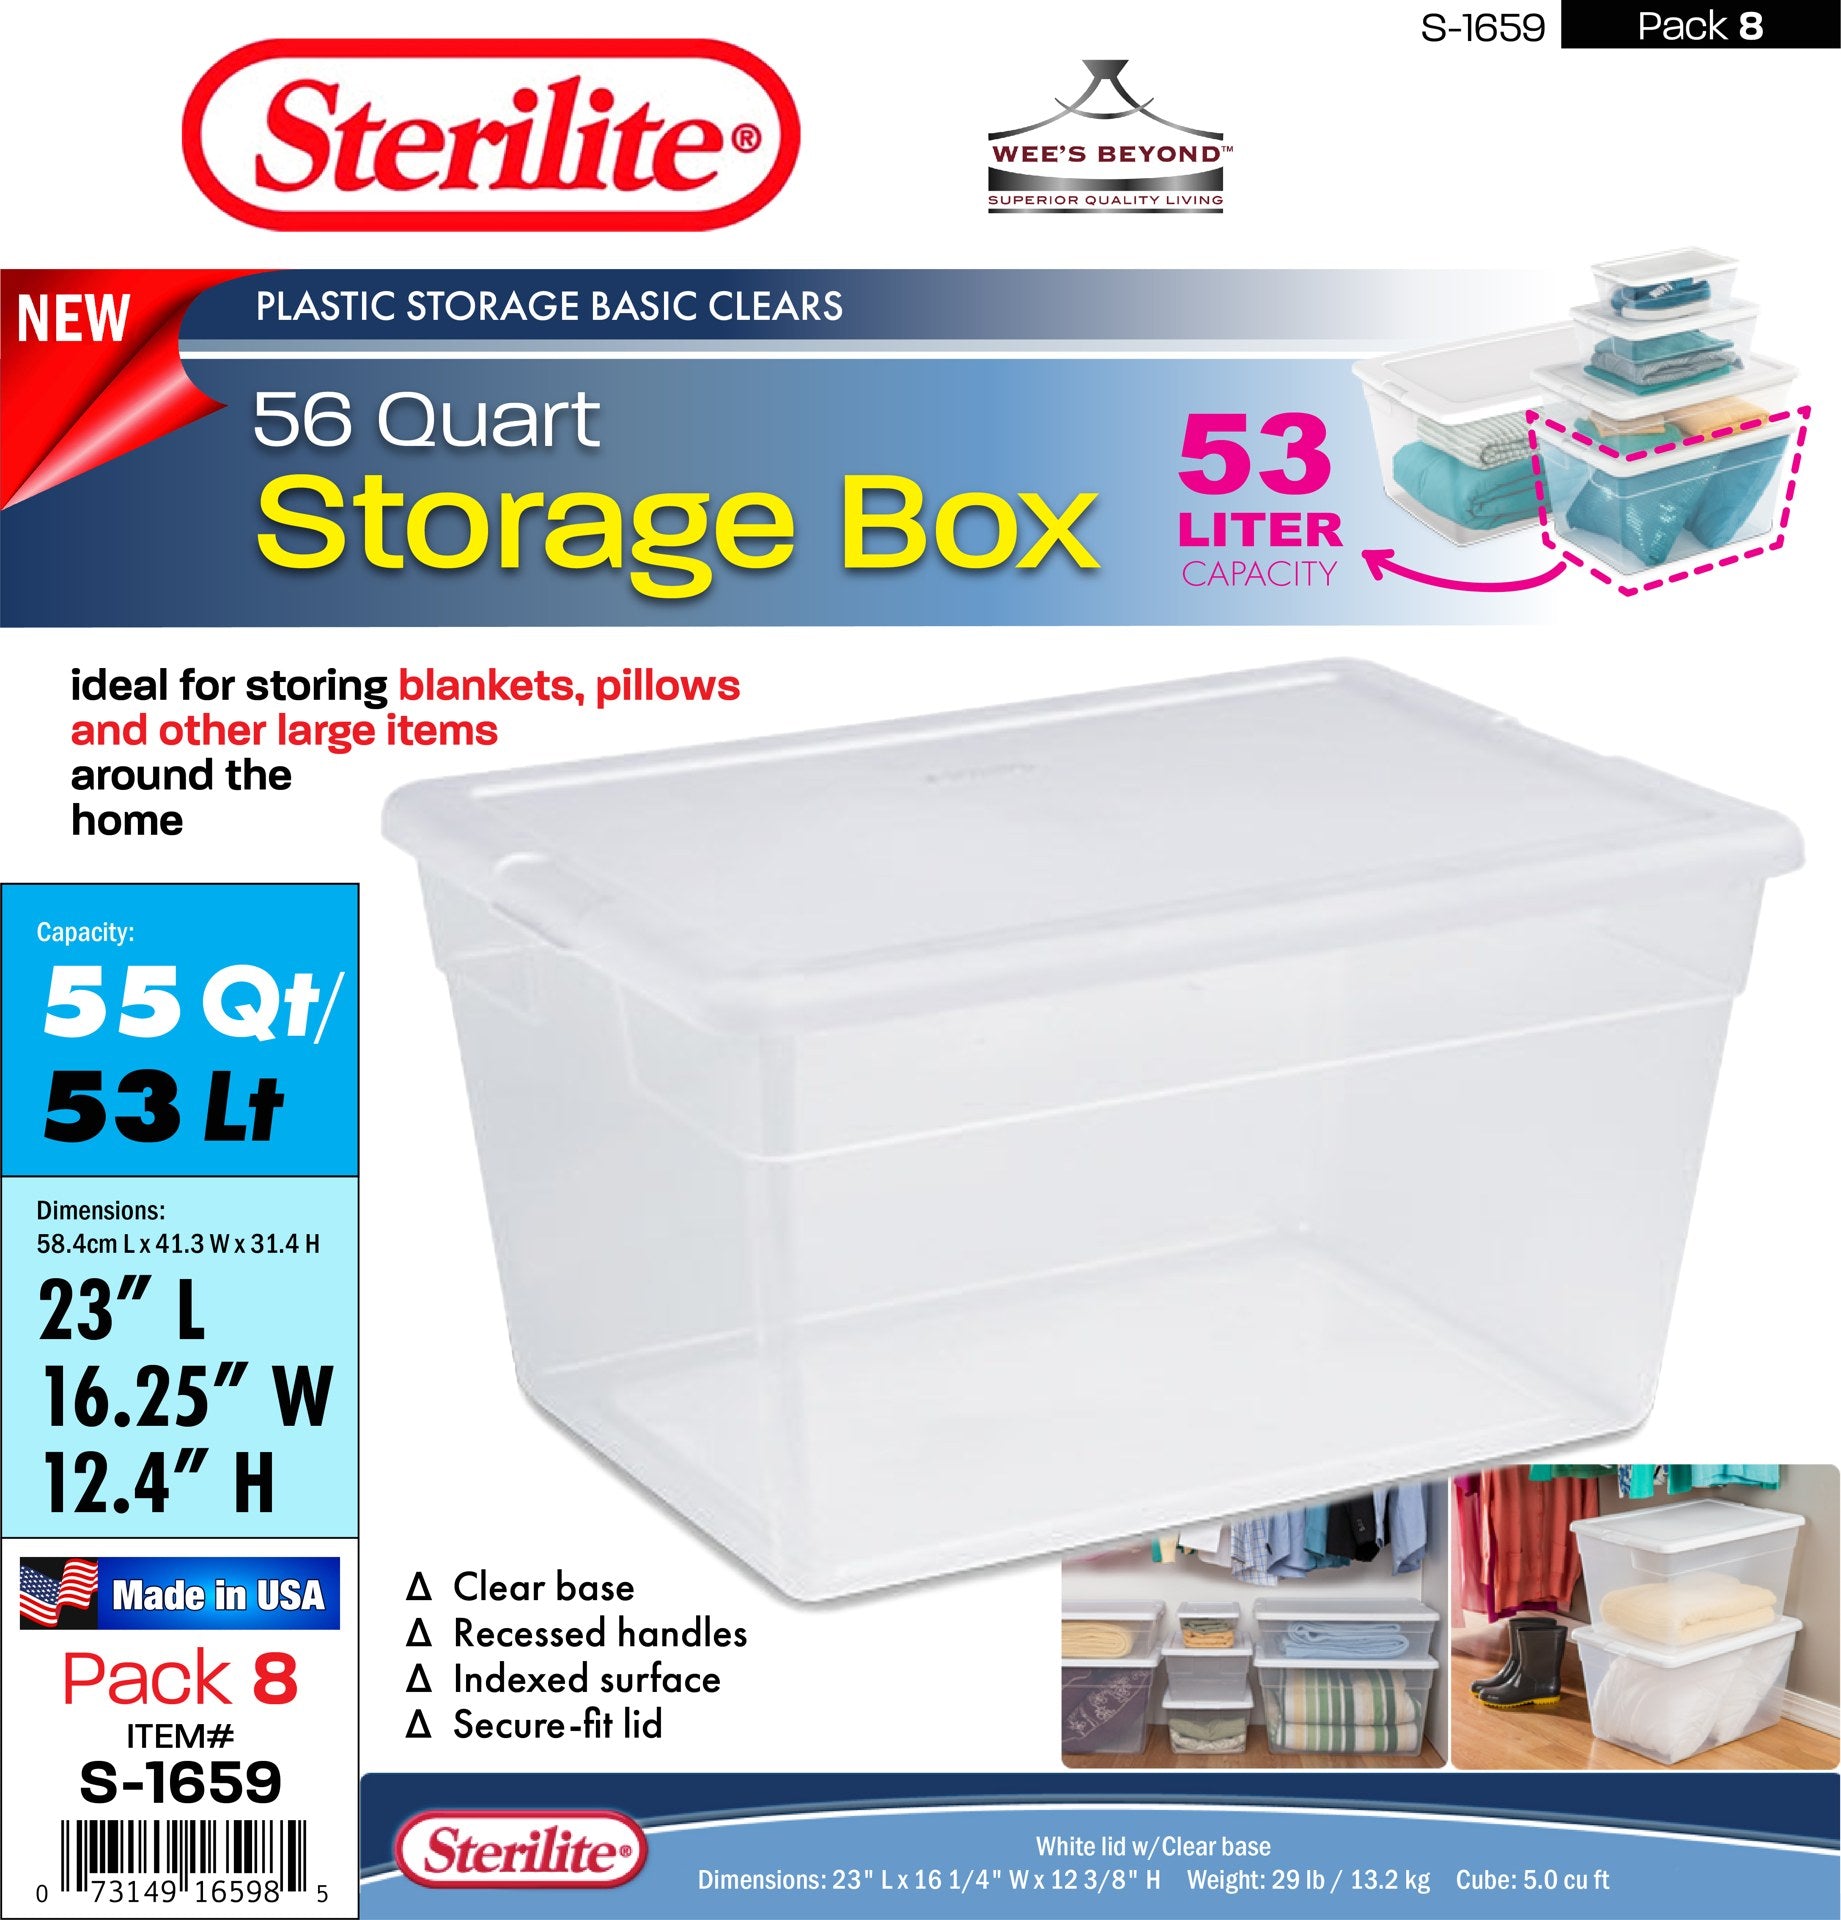 Sterilite 56 Quart Clear Plastic Storage Container Box and